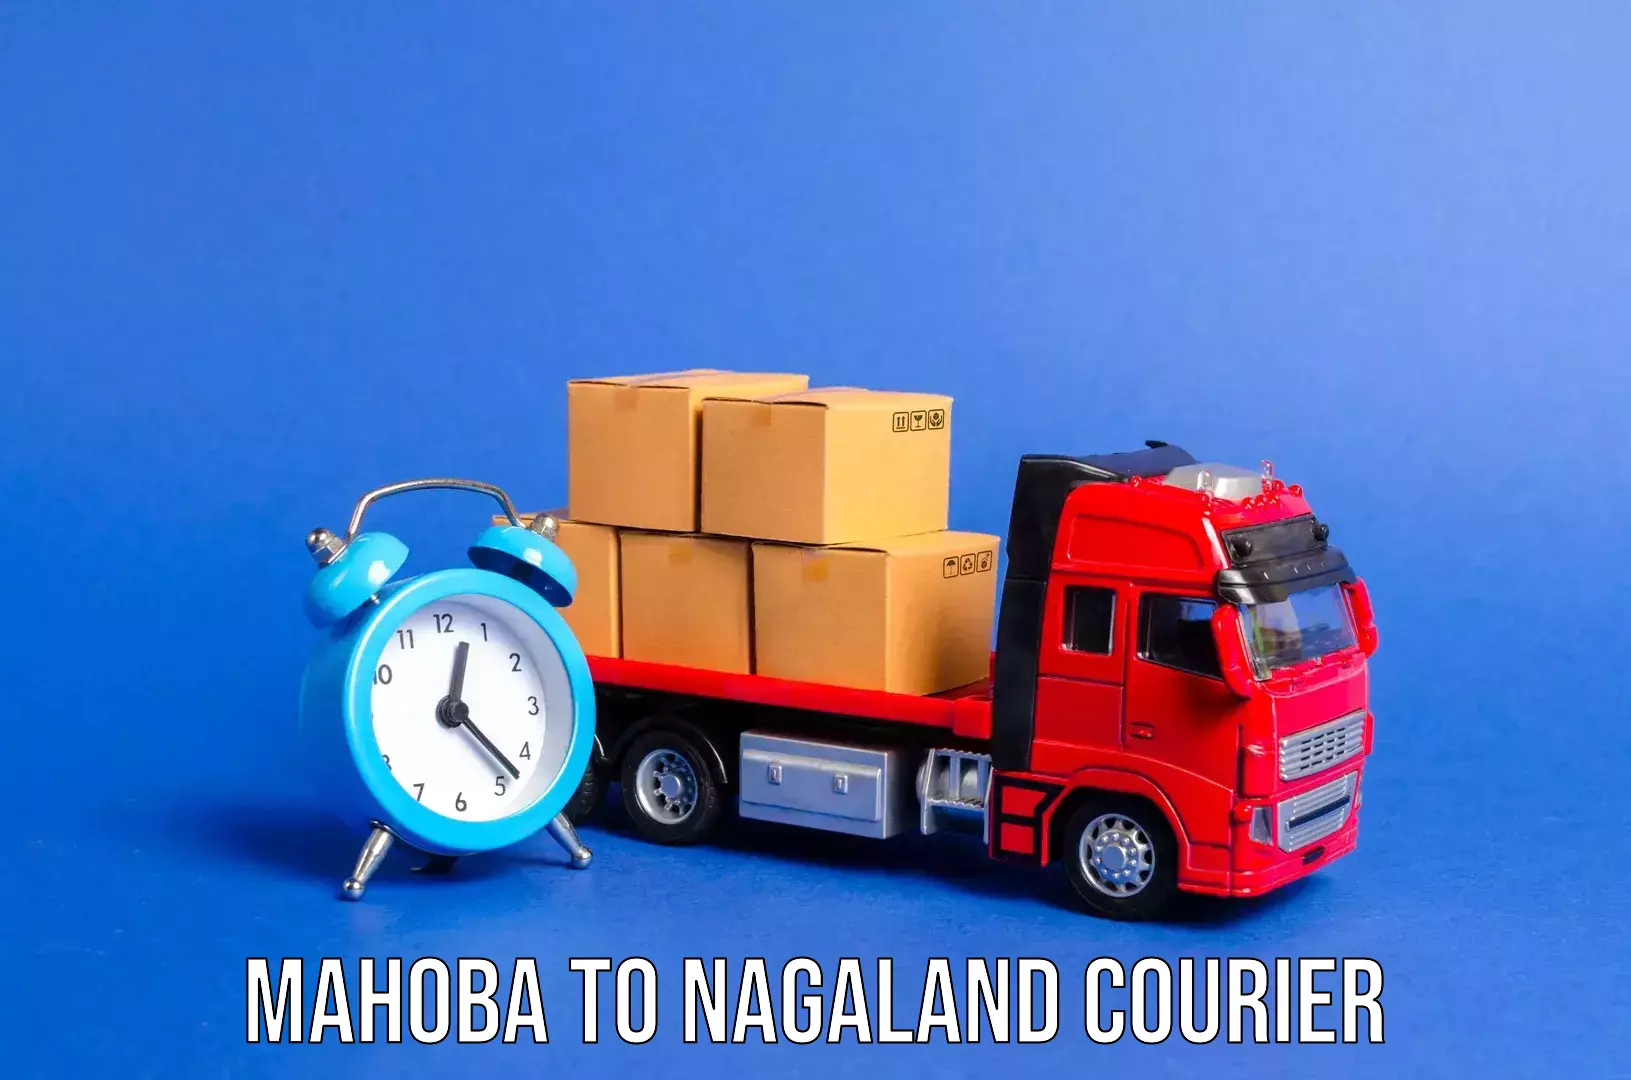 Luggage shipment processing Mahoba to Nagaland